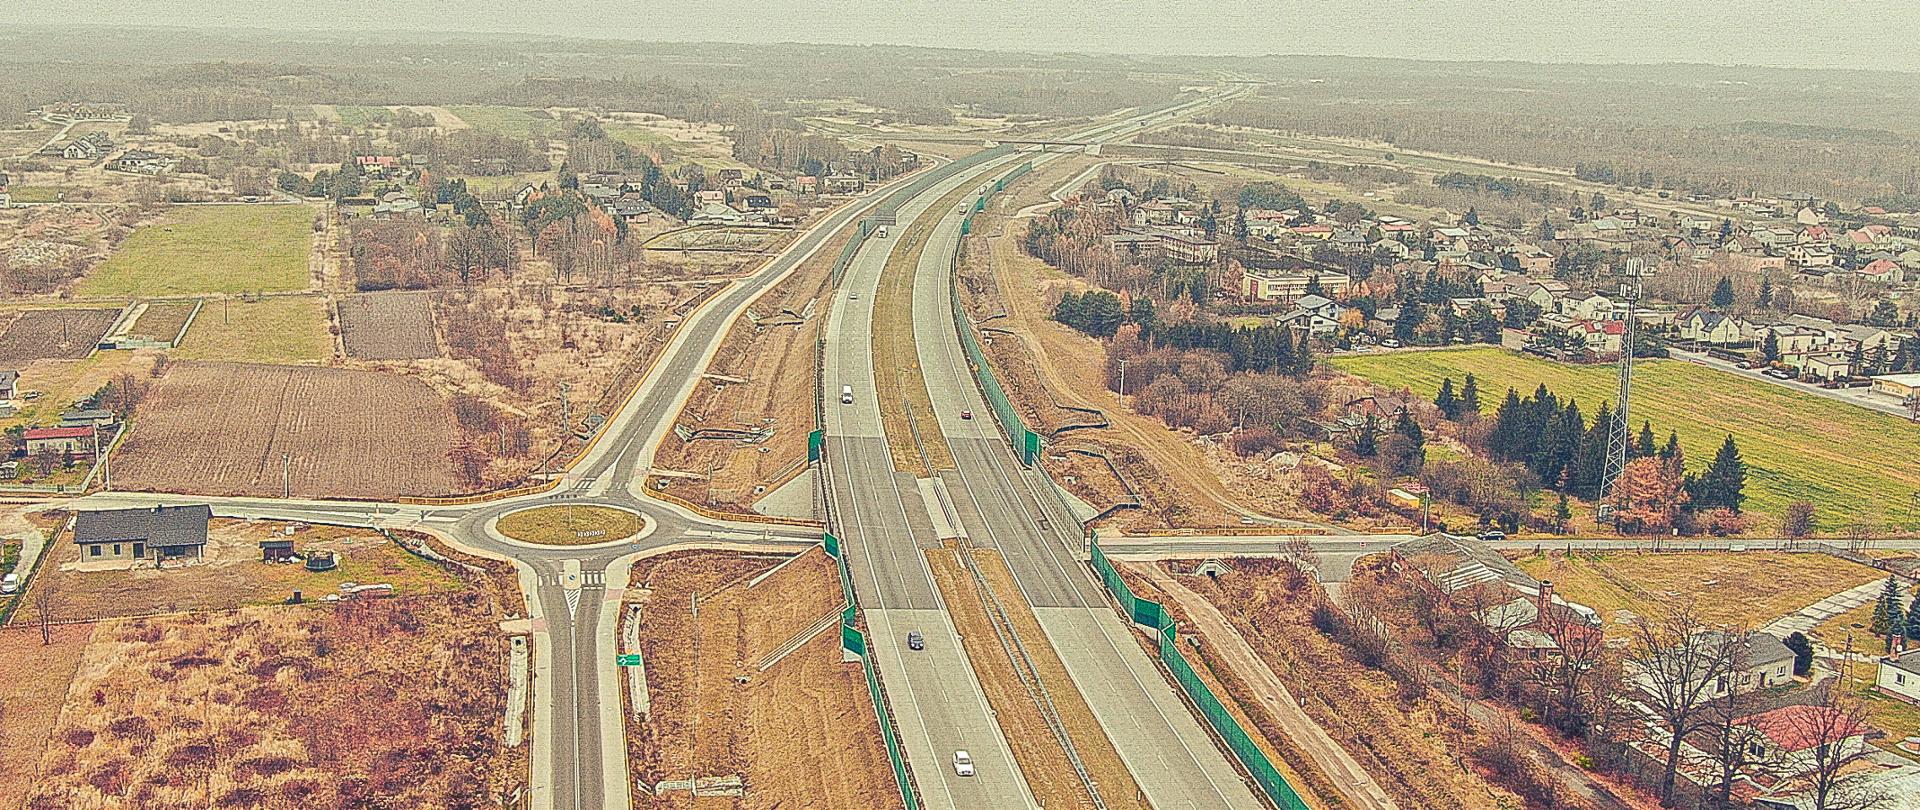 Fotografia lotnicza autostrady A1 na terenie Blachowni wykonana w listopadzie 2021 r. Na pierwszym planie widoczny wiadukt autostradowy nad rondem drogowym położnym pod jezdnią autostrady. Po obu stronach autostrady widoczna zabudowa jednorodzinna poprzecinana ternami rolniczymi i leśnymi. 